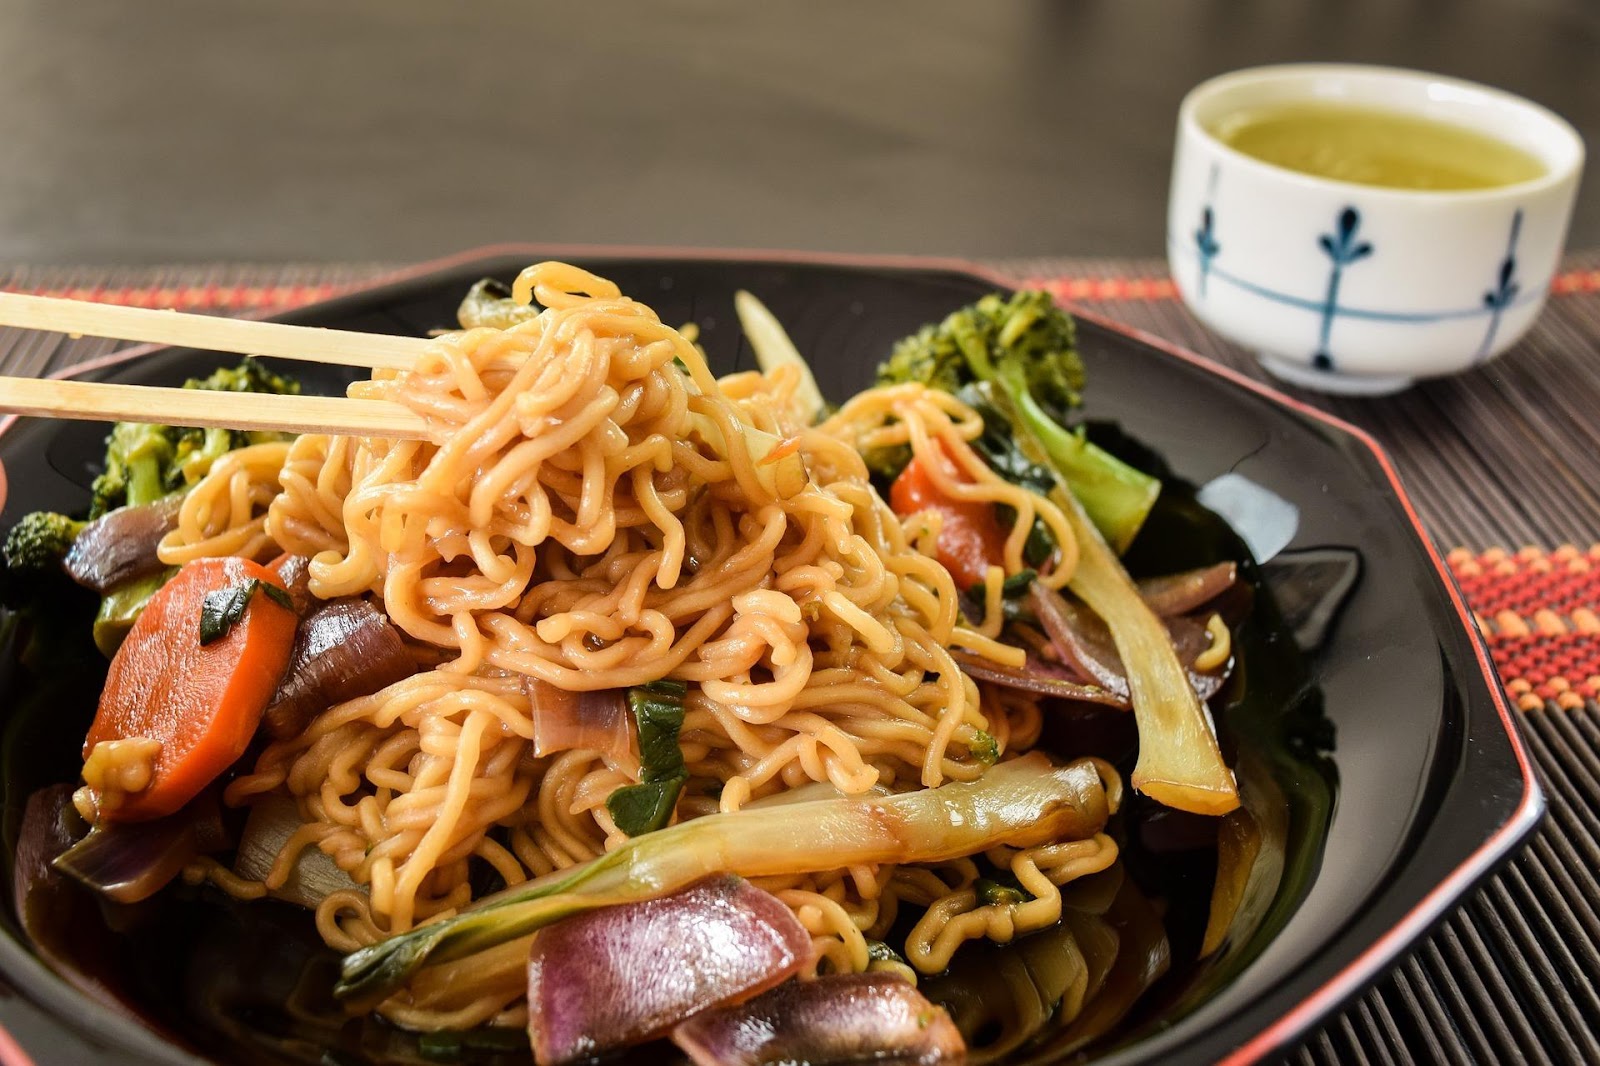 “ยากิโซบะ” บะหมี่ผัดสไตล์ญี่ปุ่น อาหารสุดฟีเวอร์ที่หาทานได้ง่าย ๆ1